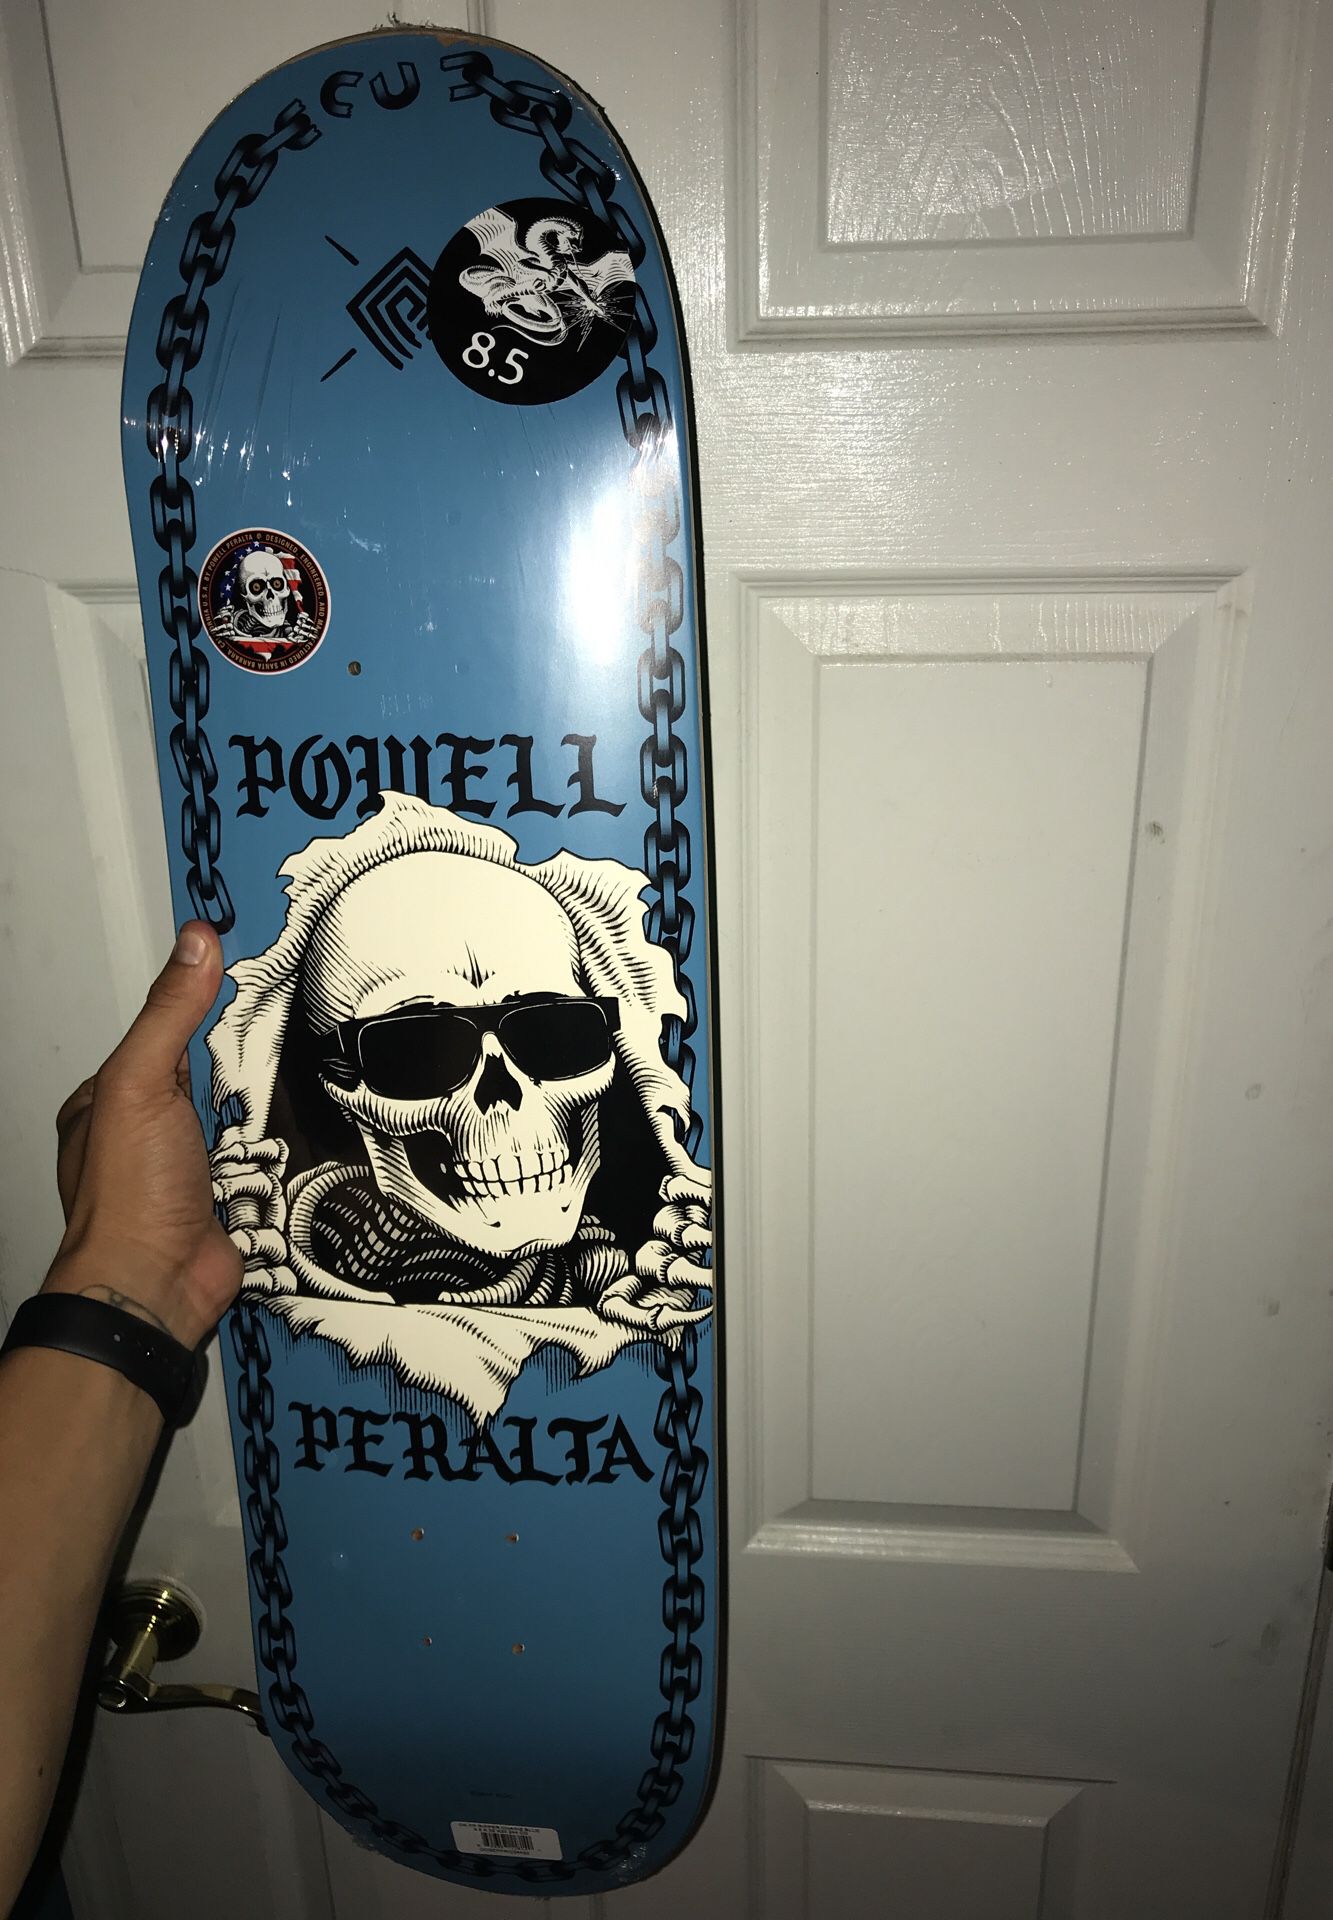 Powell peralta board size 8.5 still in plastic 😋